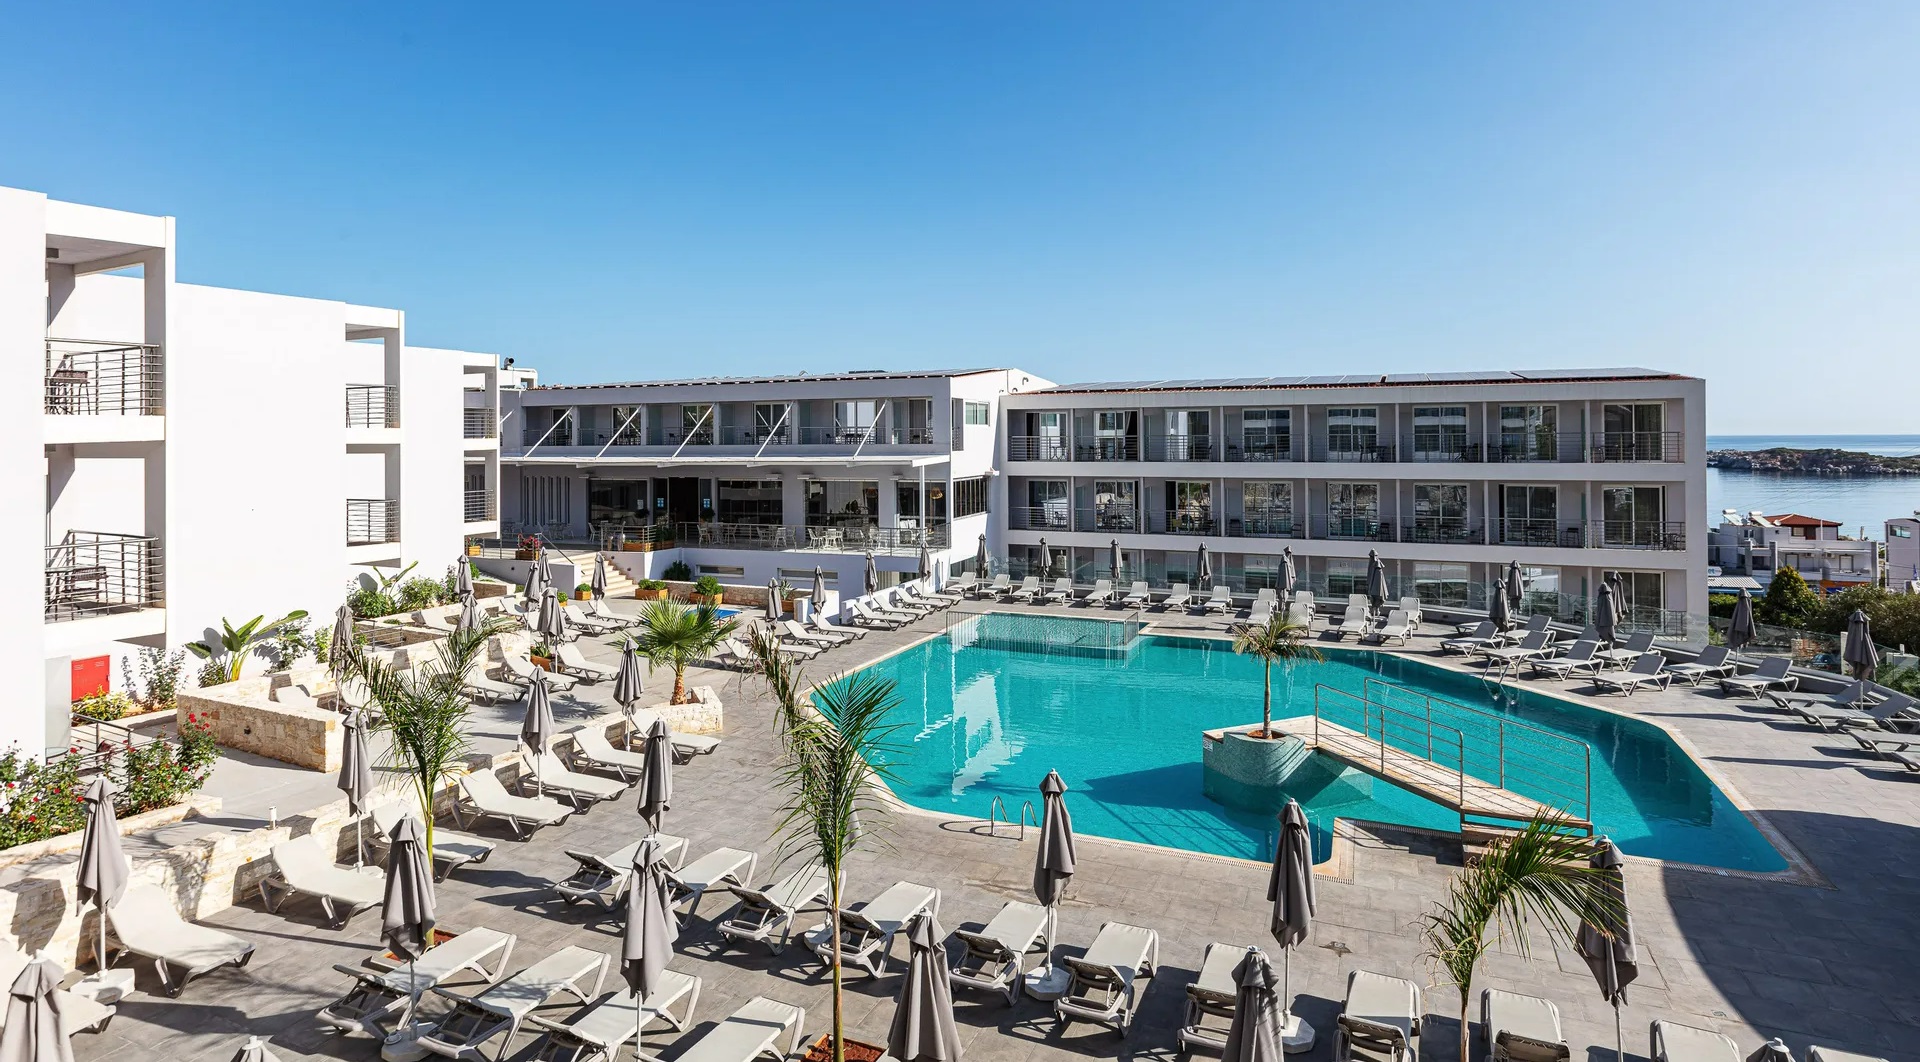 4* Atali Grand Resort - Μπαλί, Κρήτη ✦ -10% ✦ 2 Ημέρες